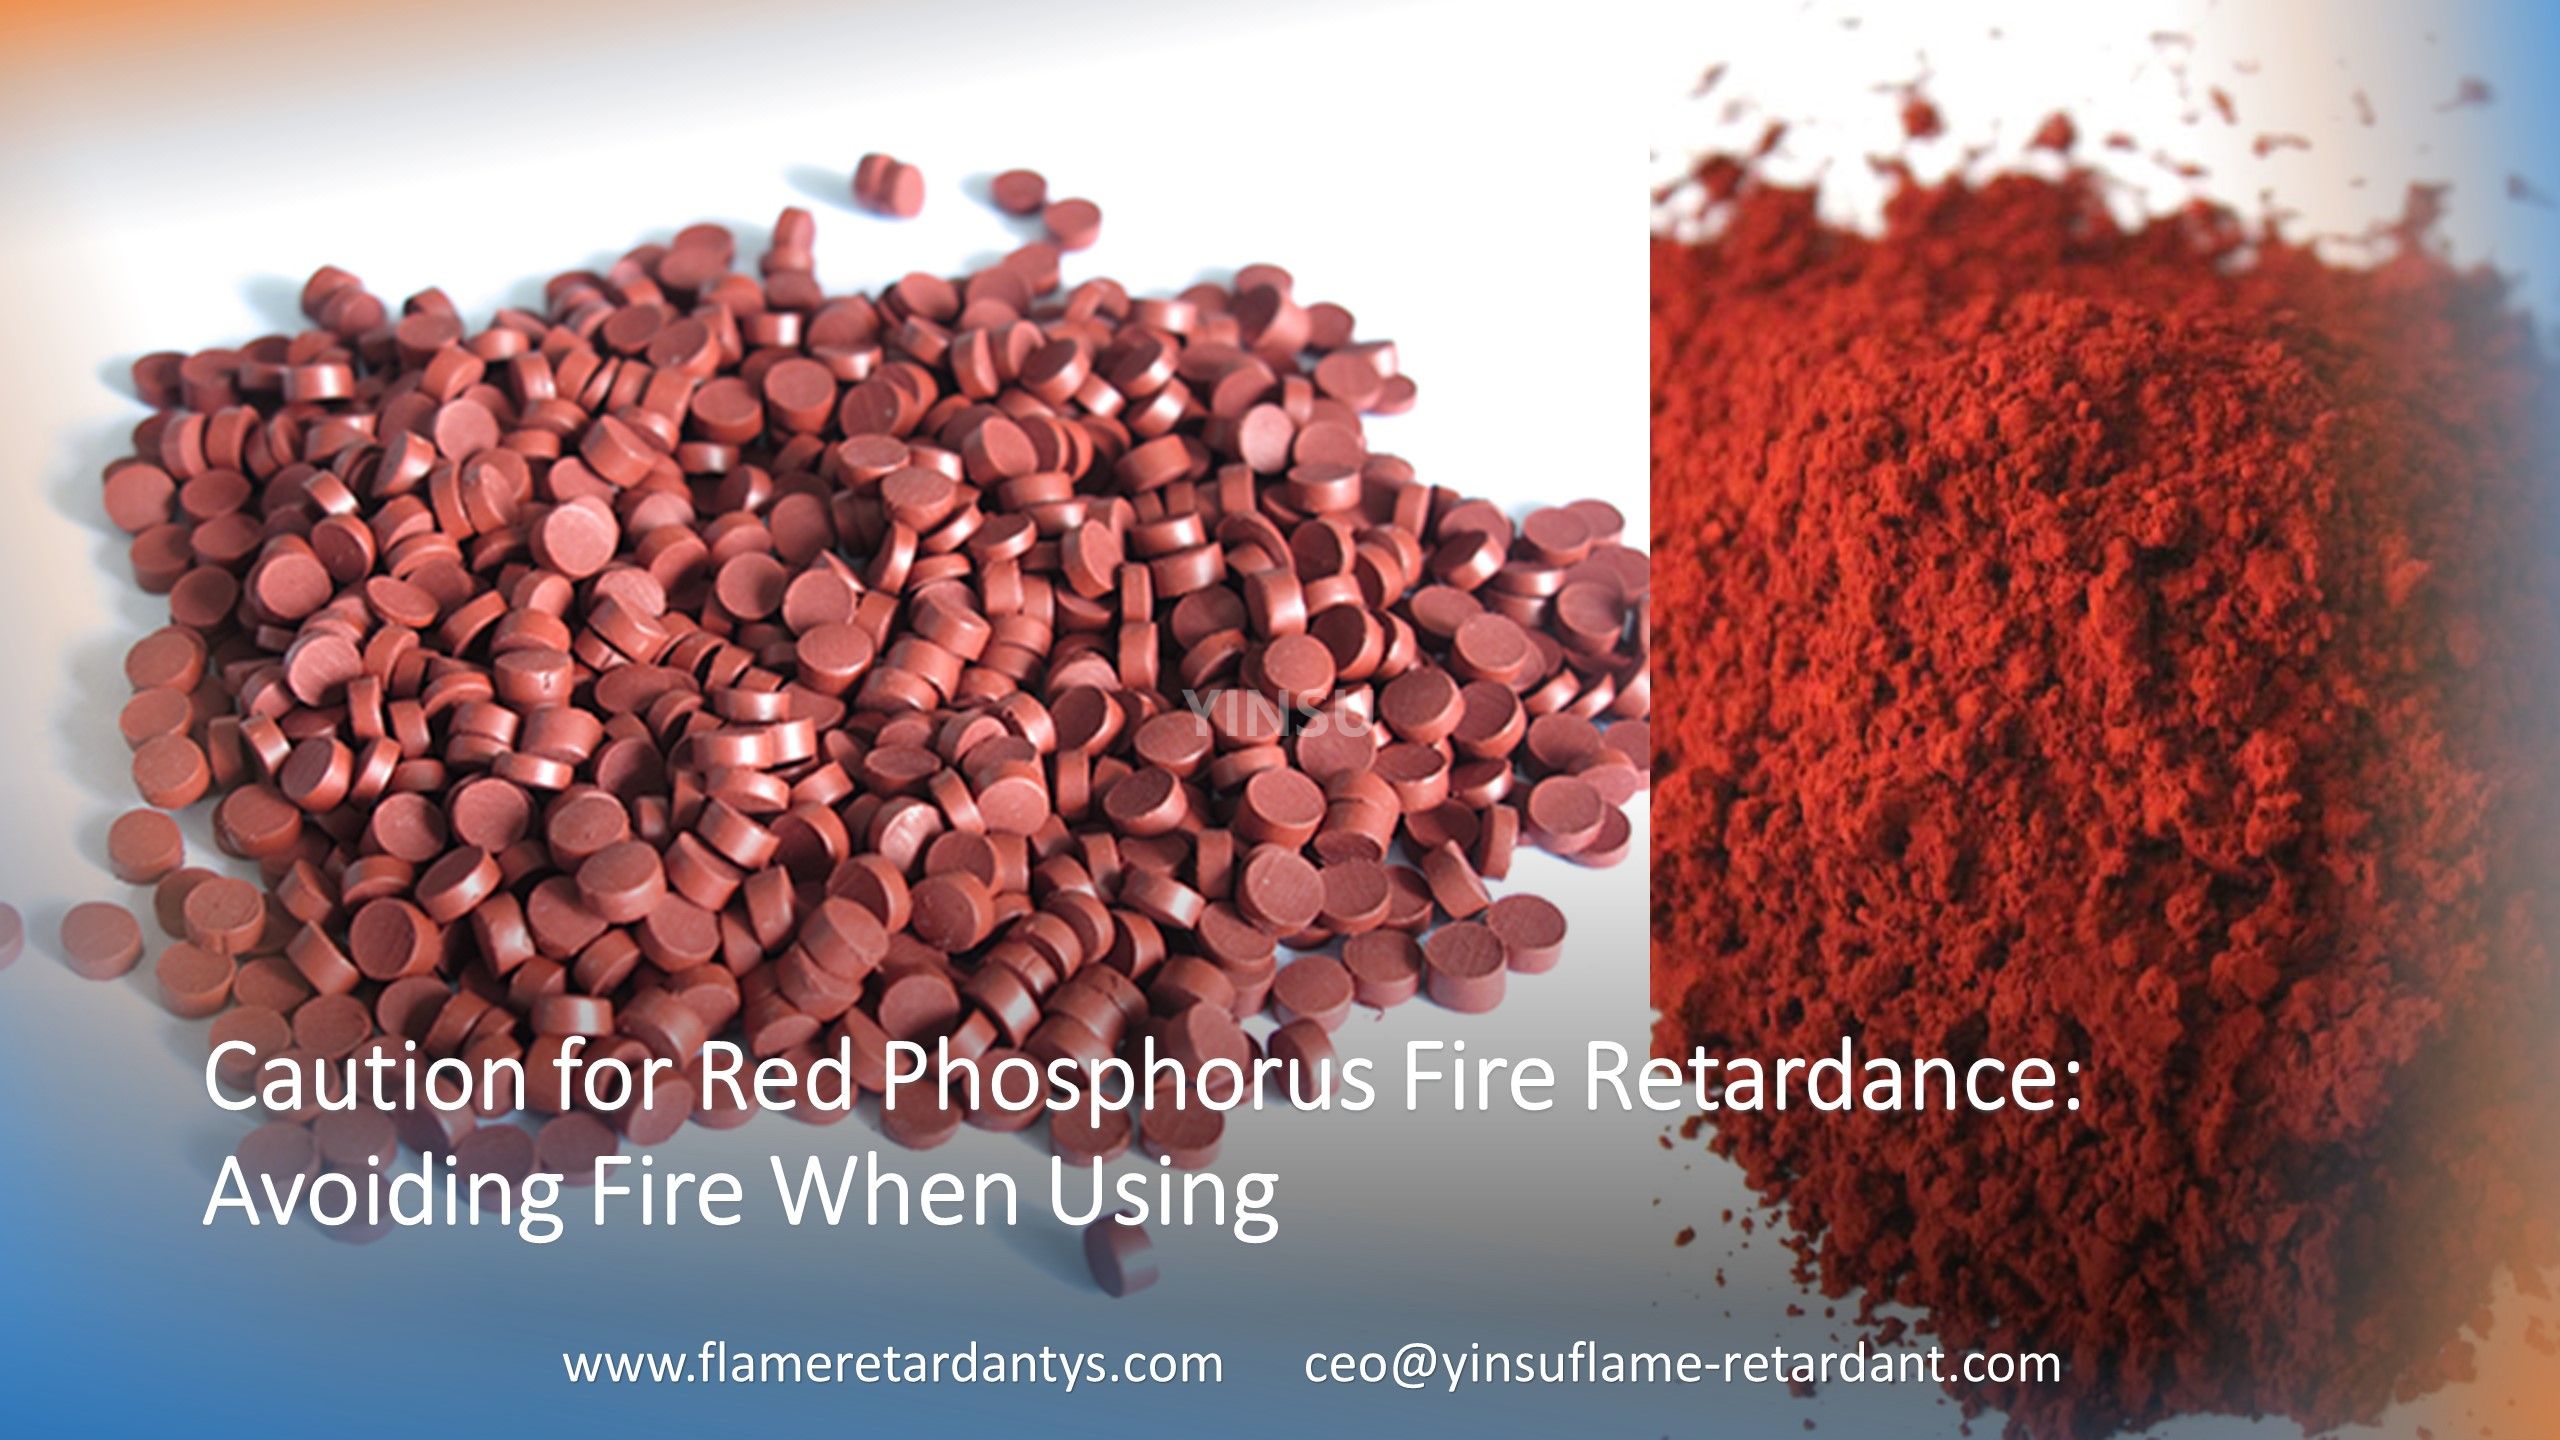 Attention concernant l'ignifugation du phosphore rouge : éviter les incendies lors de l'utilisation